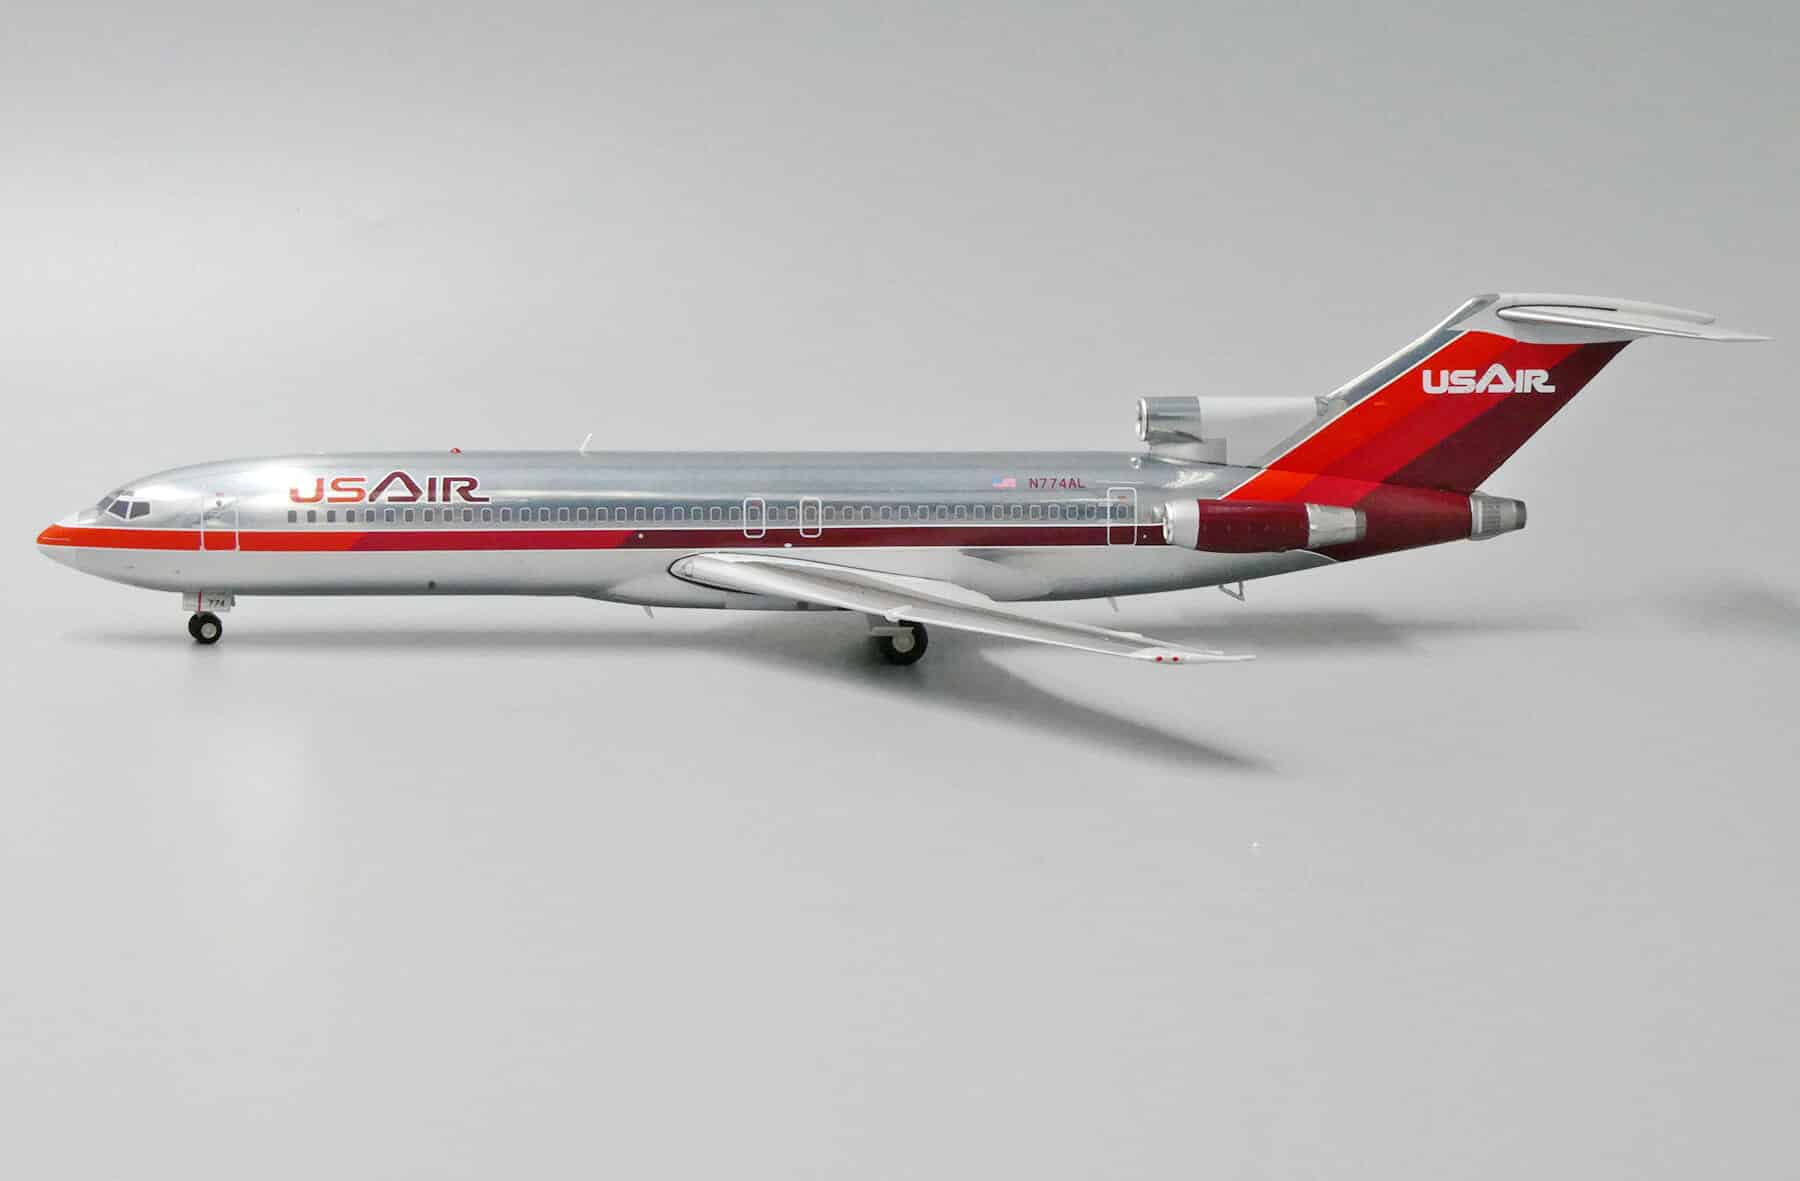 jc wings - 1:200 us air boeing 727-200 n774al (jc2390)